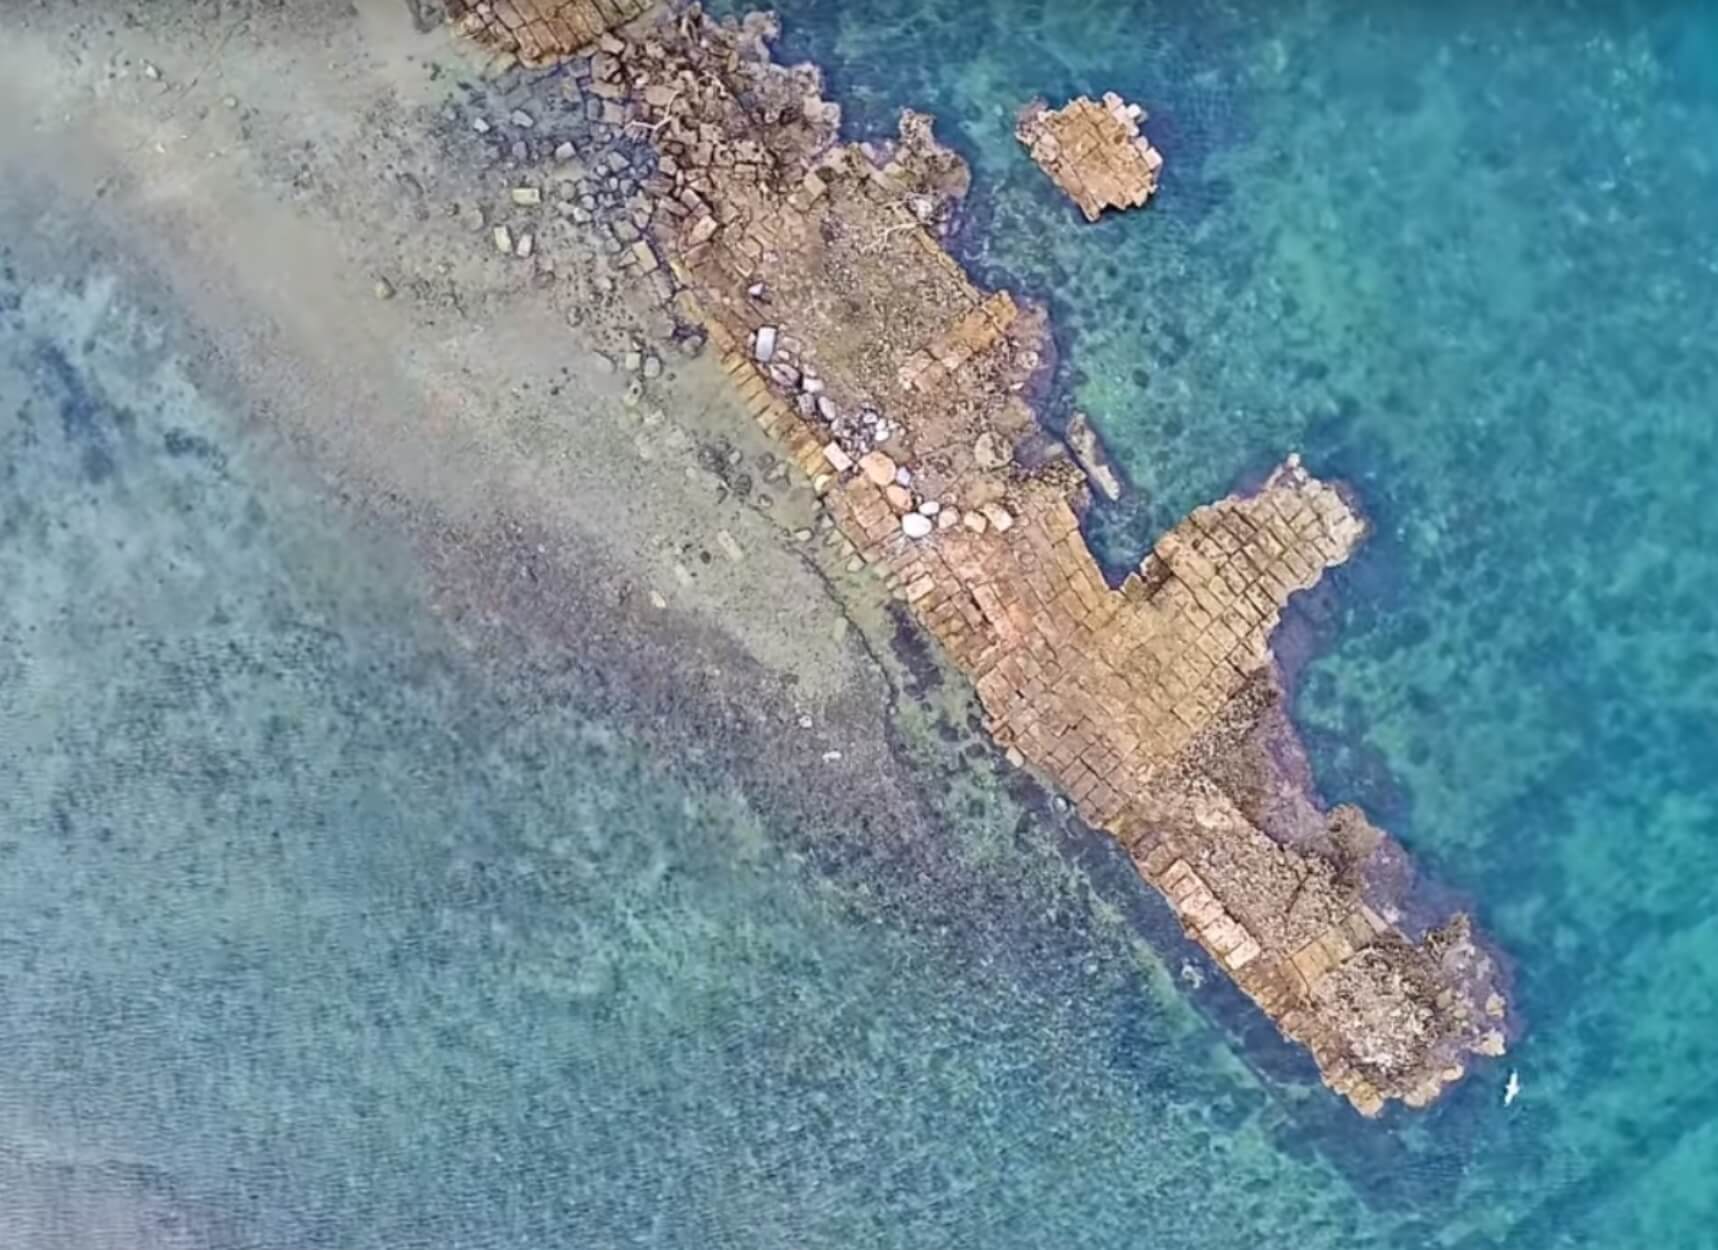 Αυτό είναι το αρχαίο ελληνικό λιμάνι με τις 100 τριήρεις που δεν άγγιξε ο χρόνος